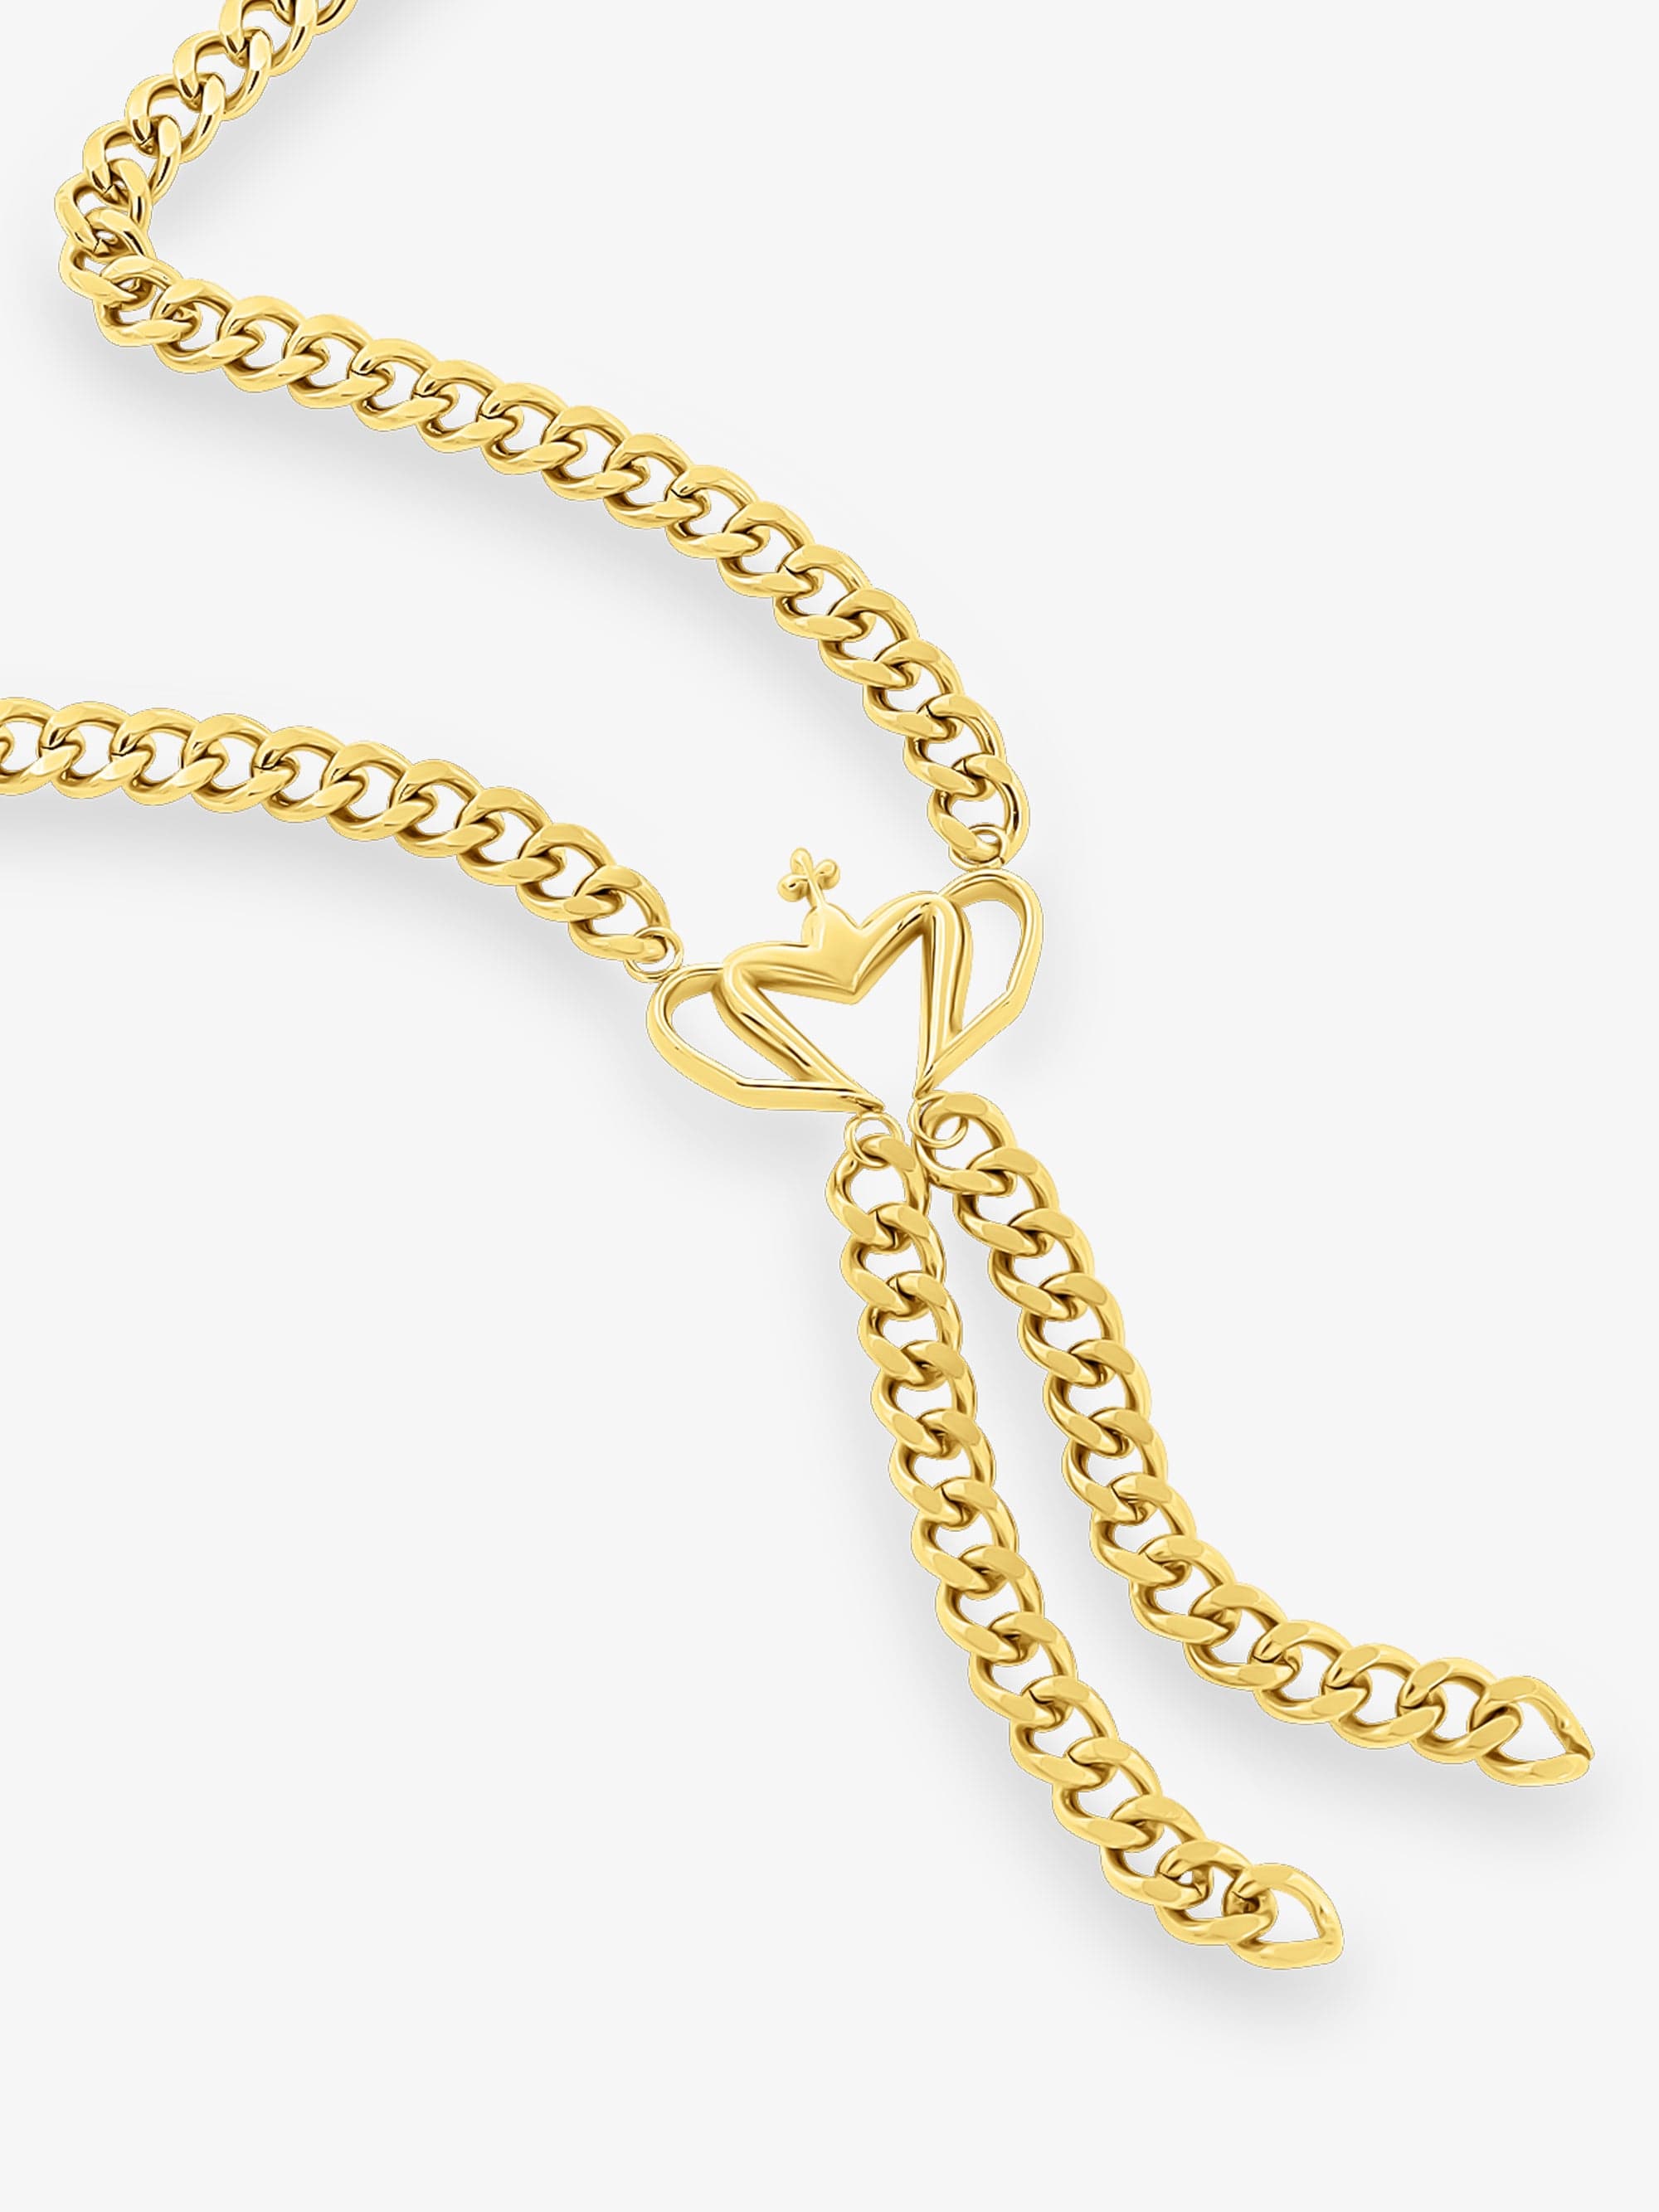 Sultana-Malta CHAINS Tassel Crown Necklace